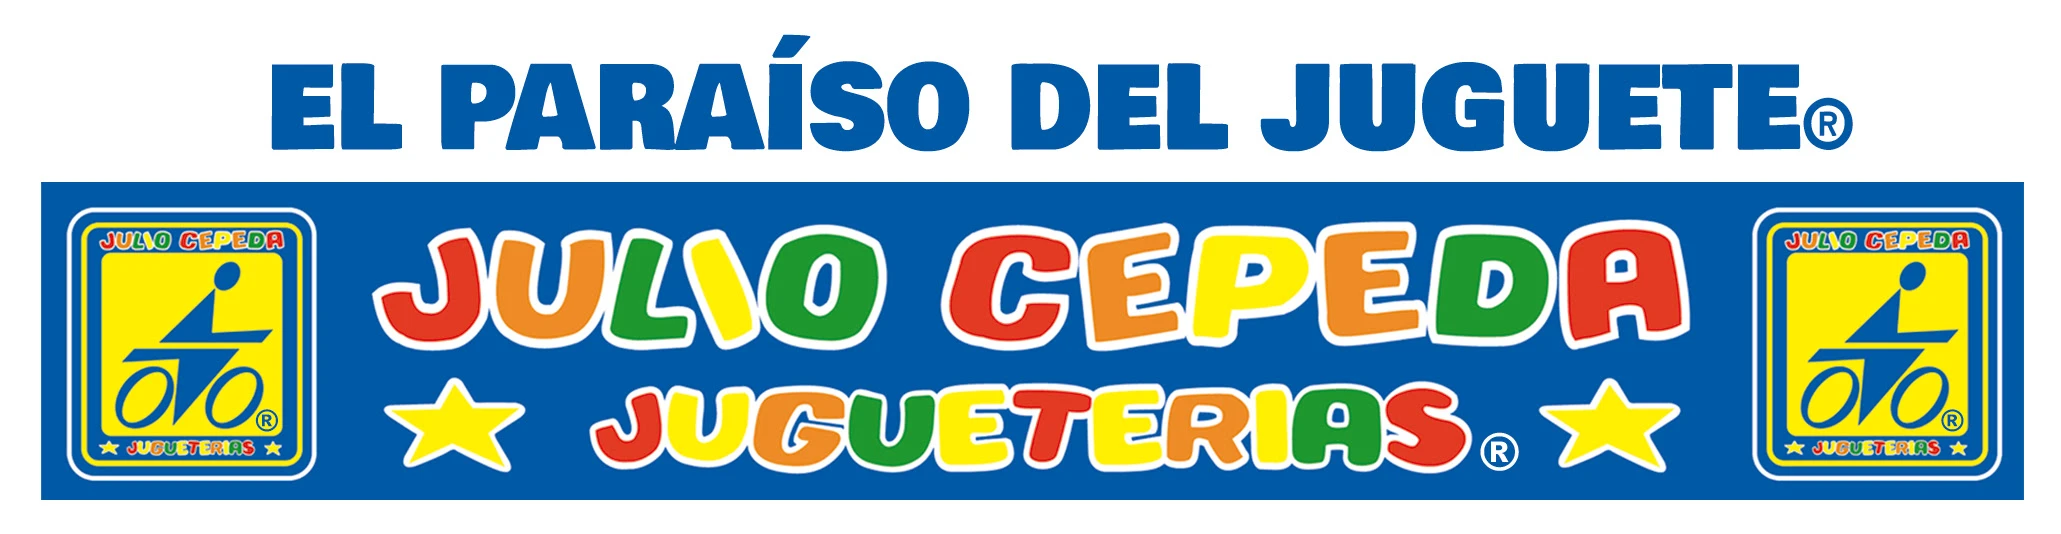  Cupon de Descuento Julio Cepeda